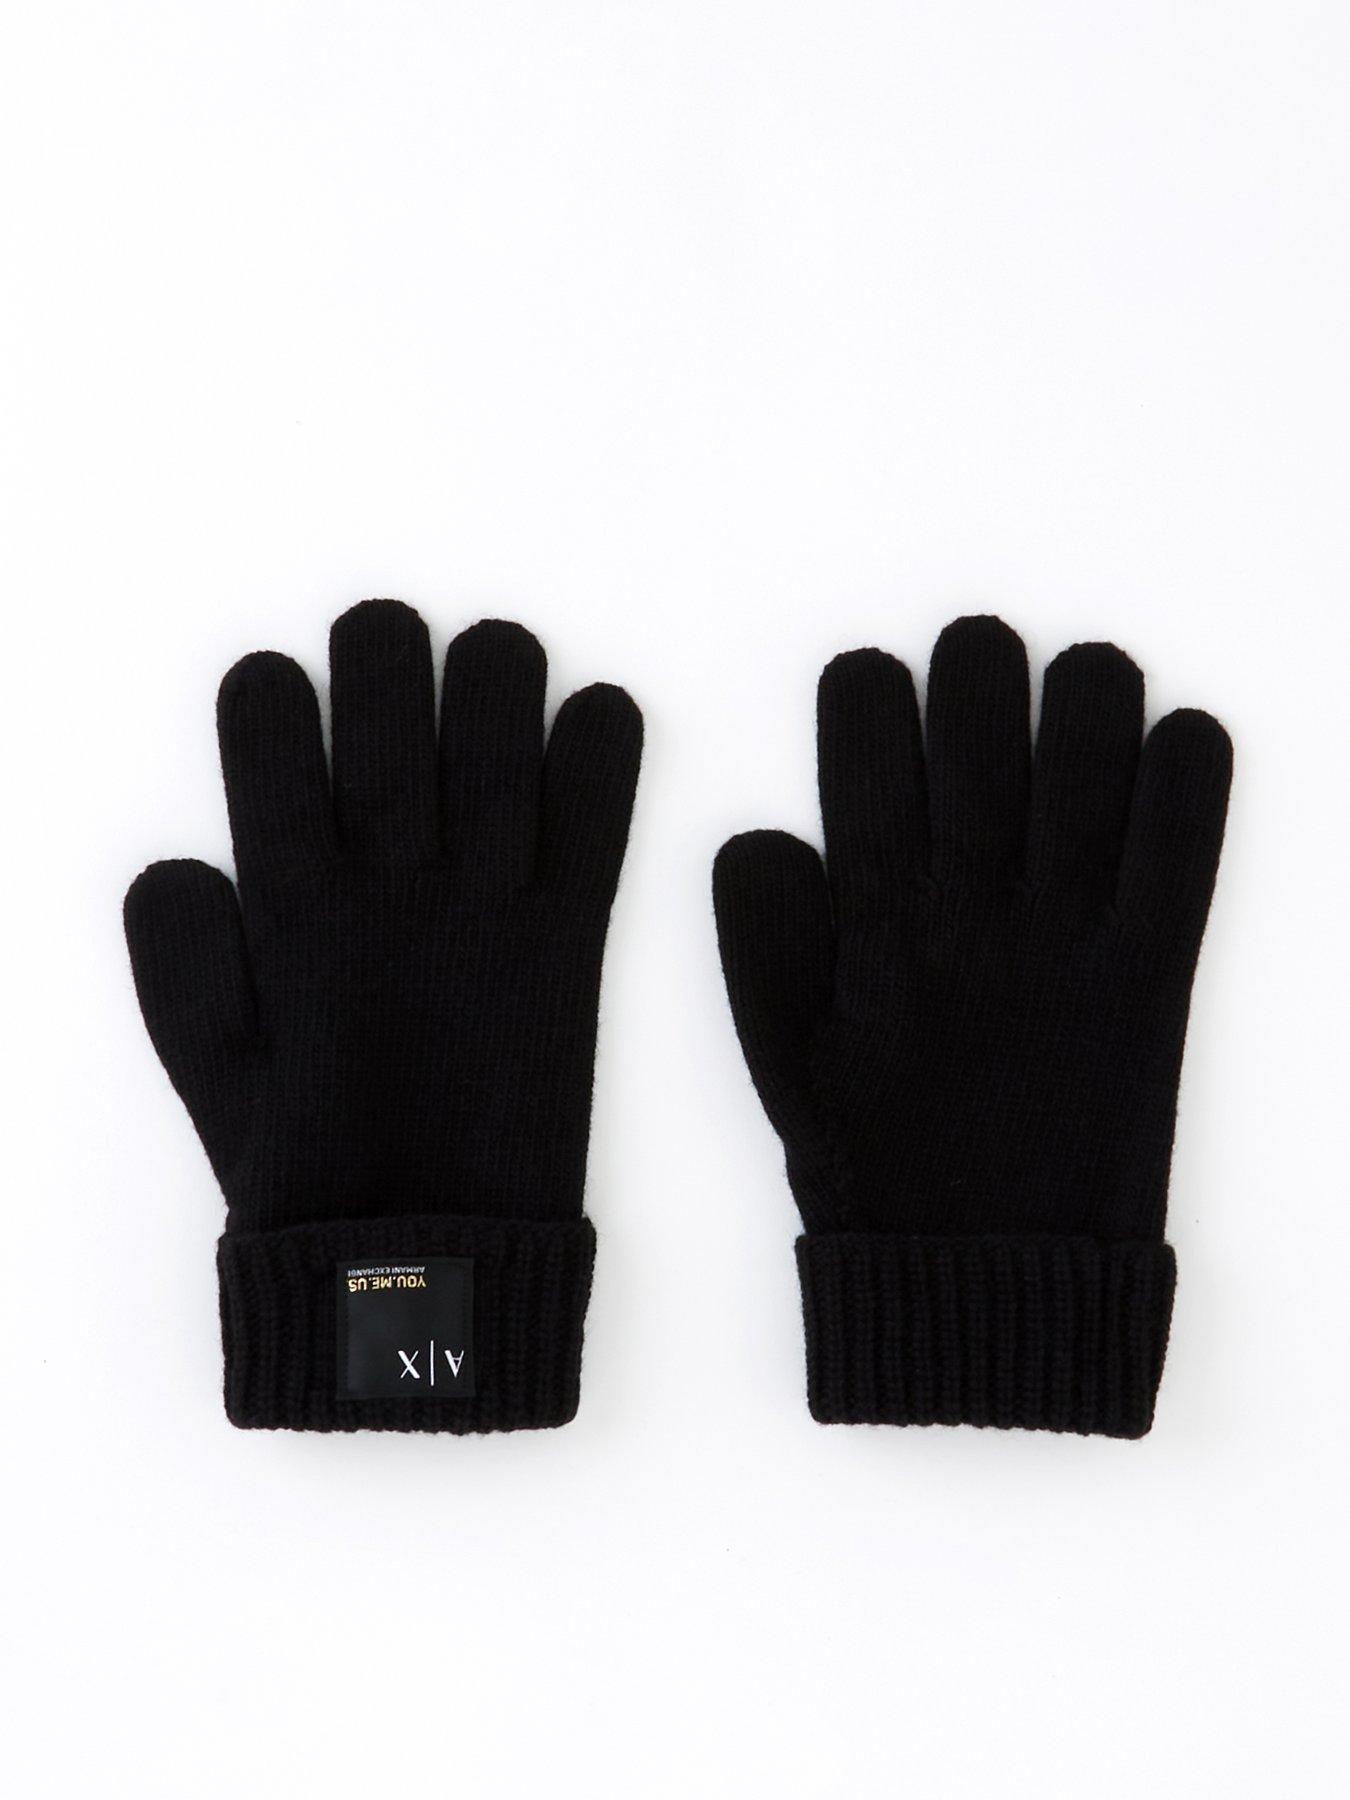 Armani exchange | Gloves | Accessories | Men 